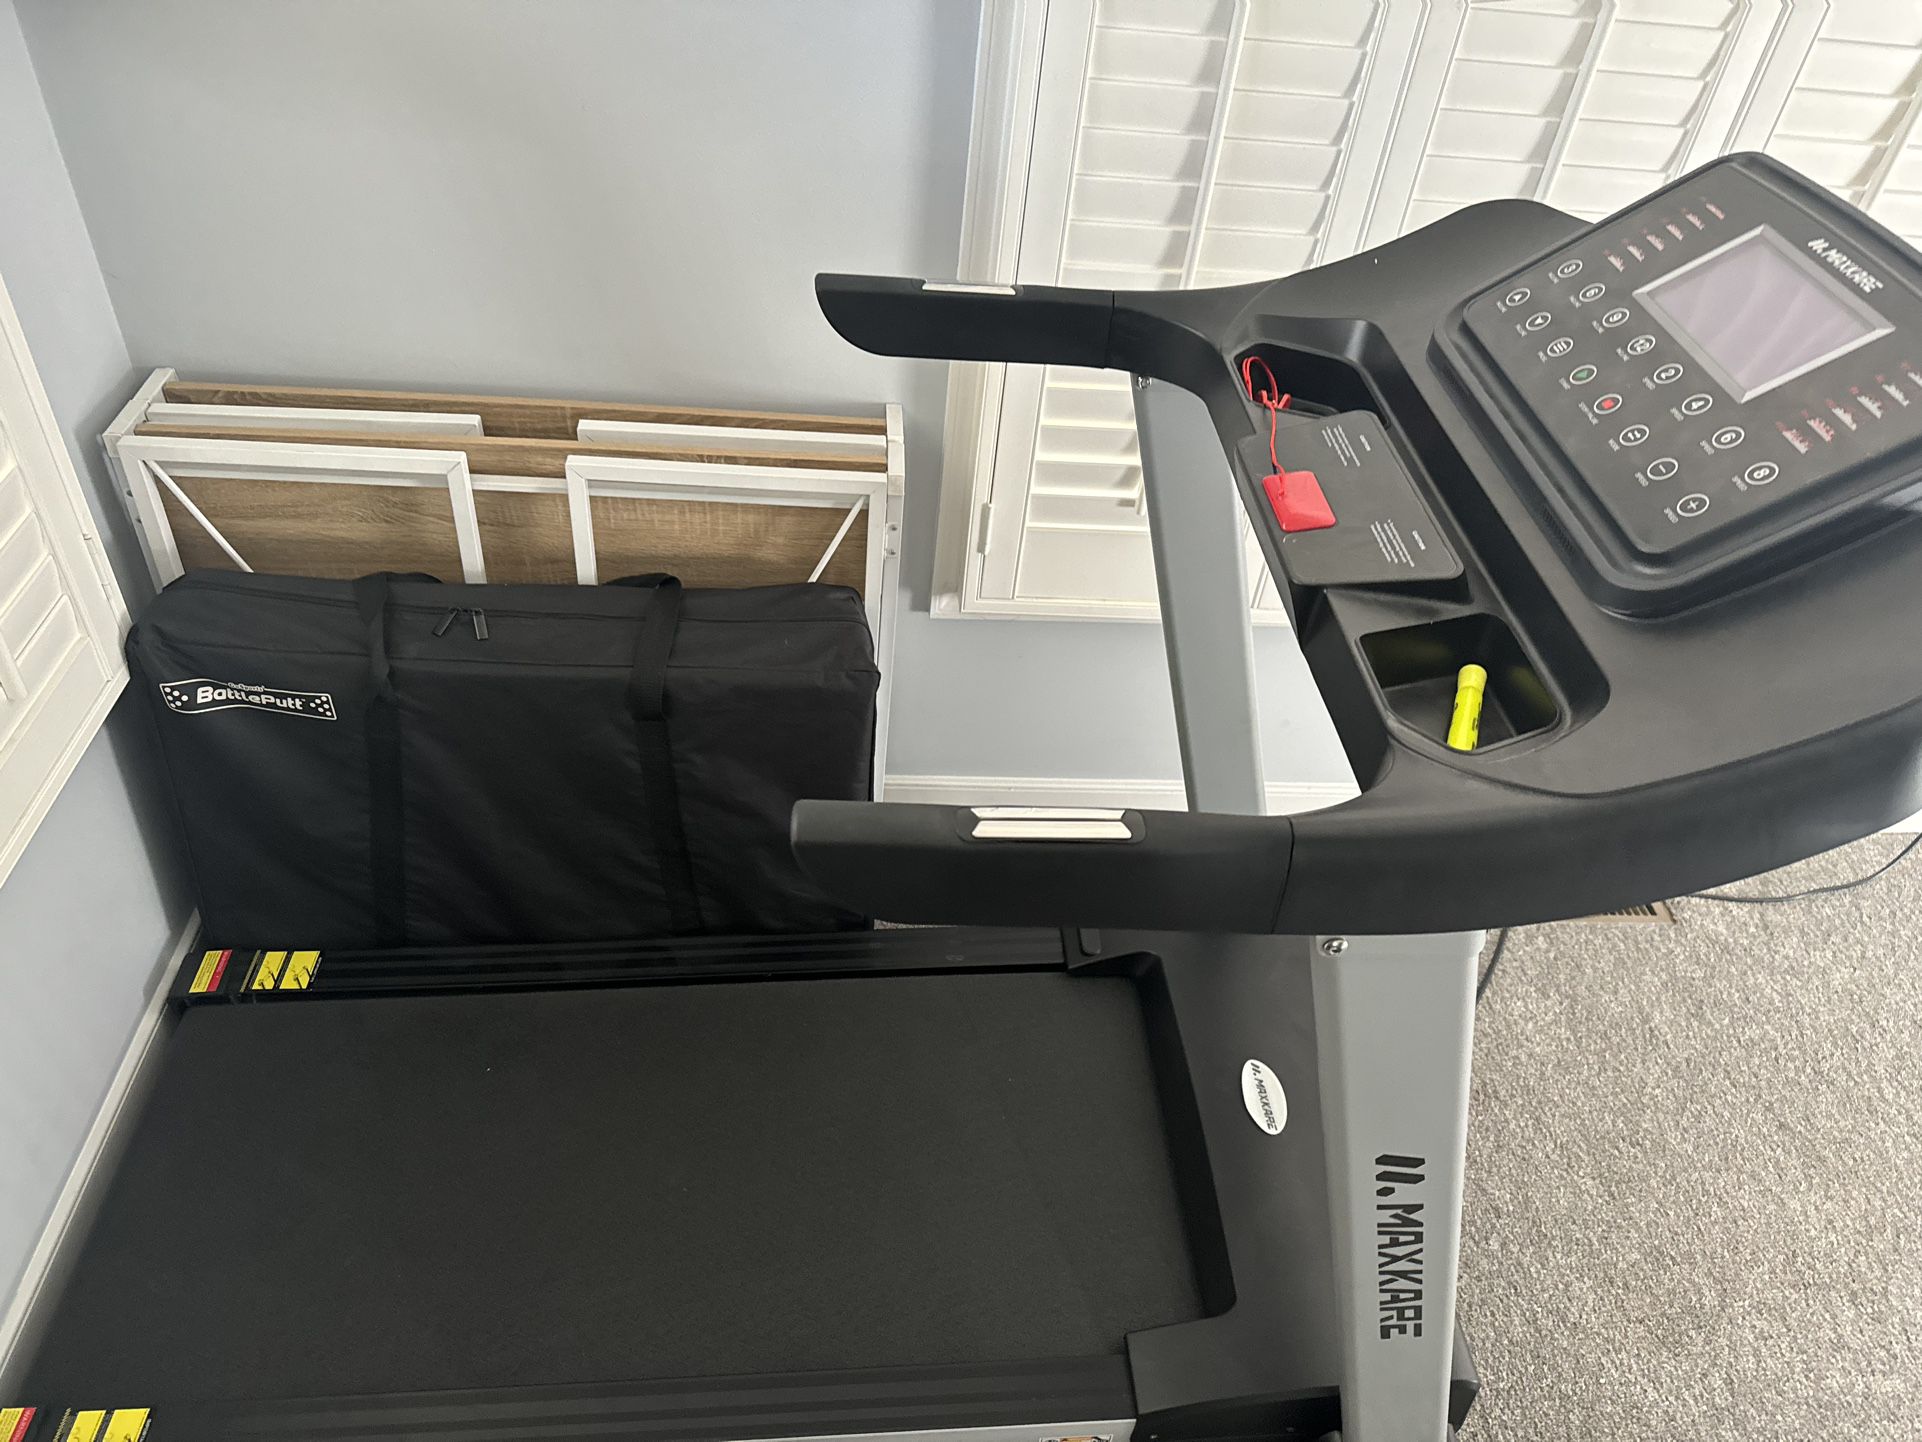 Like New (used) Treadmill